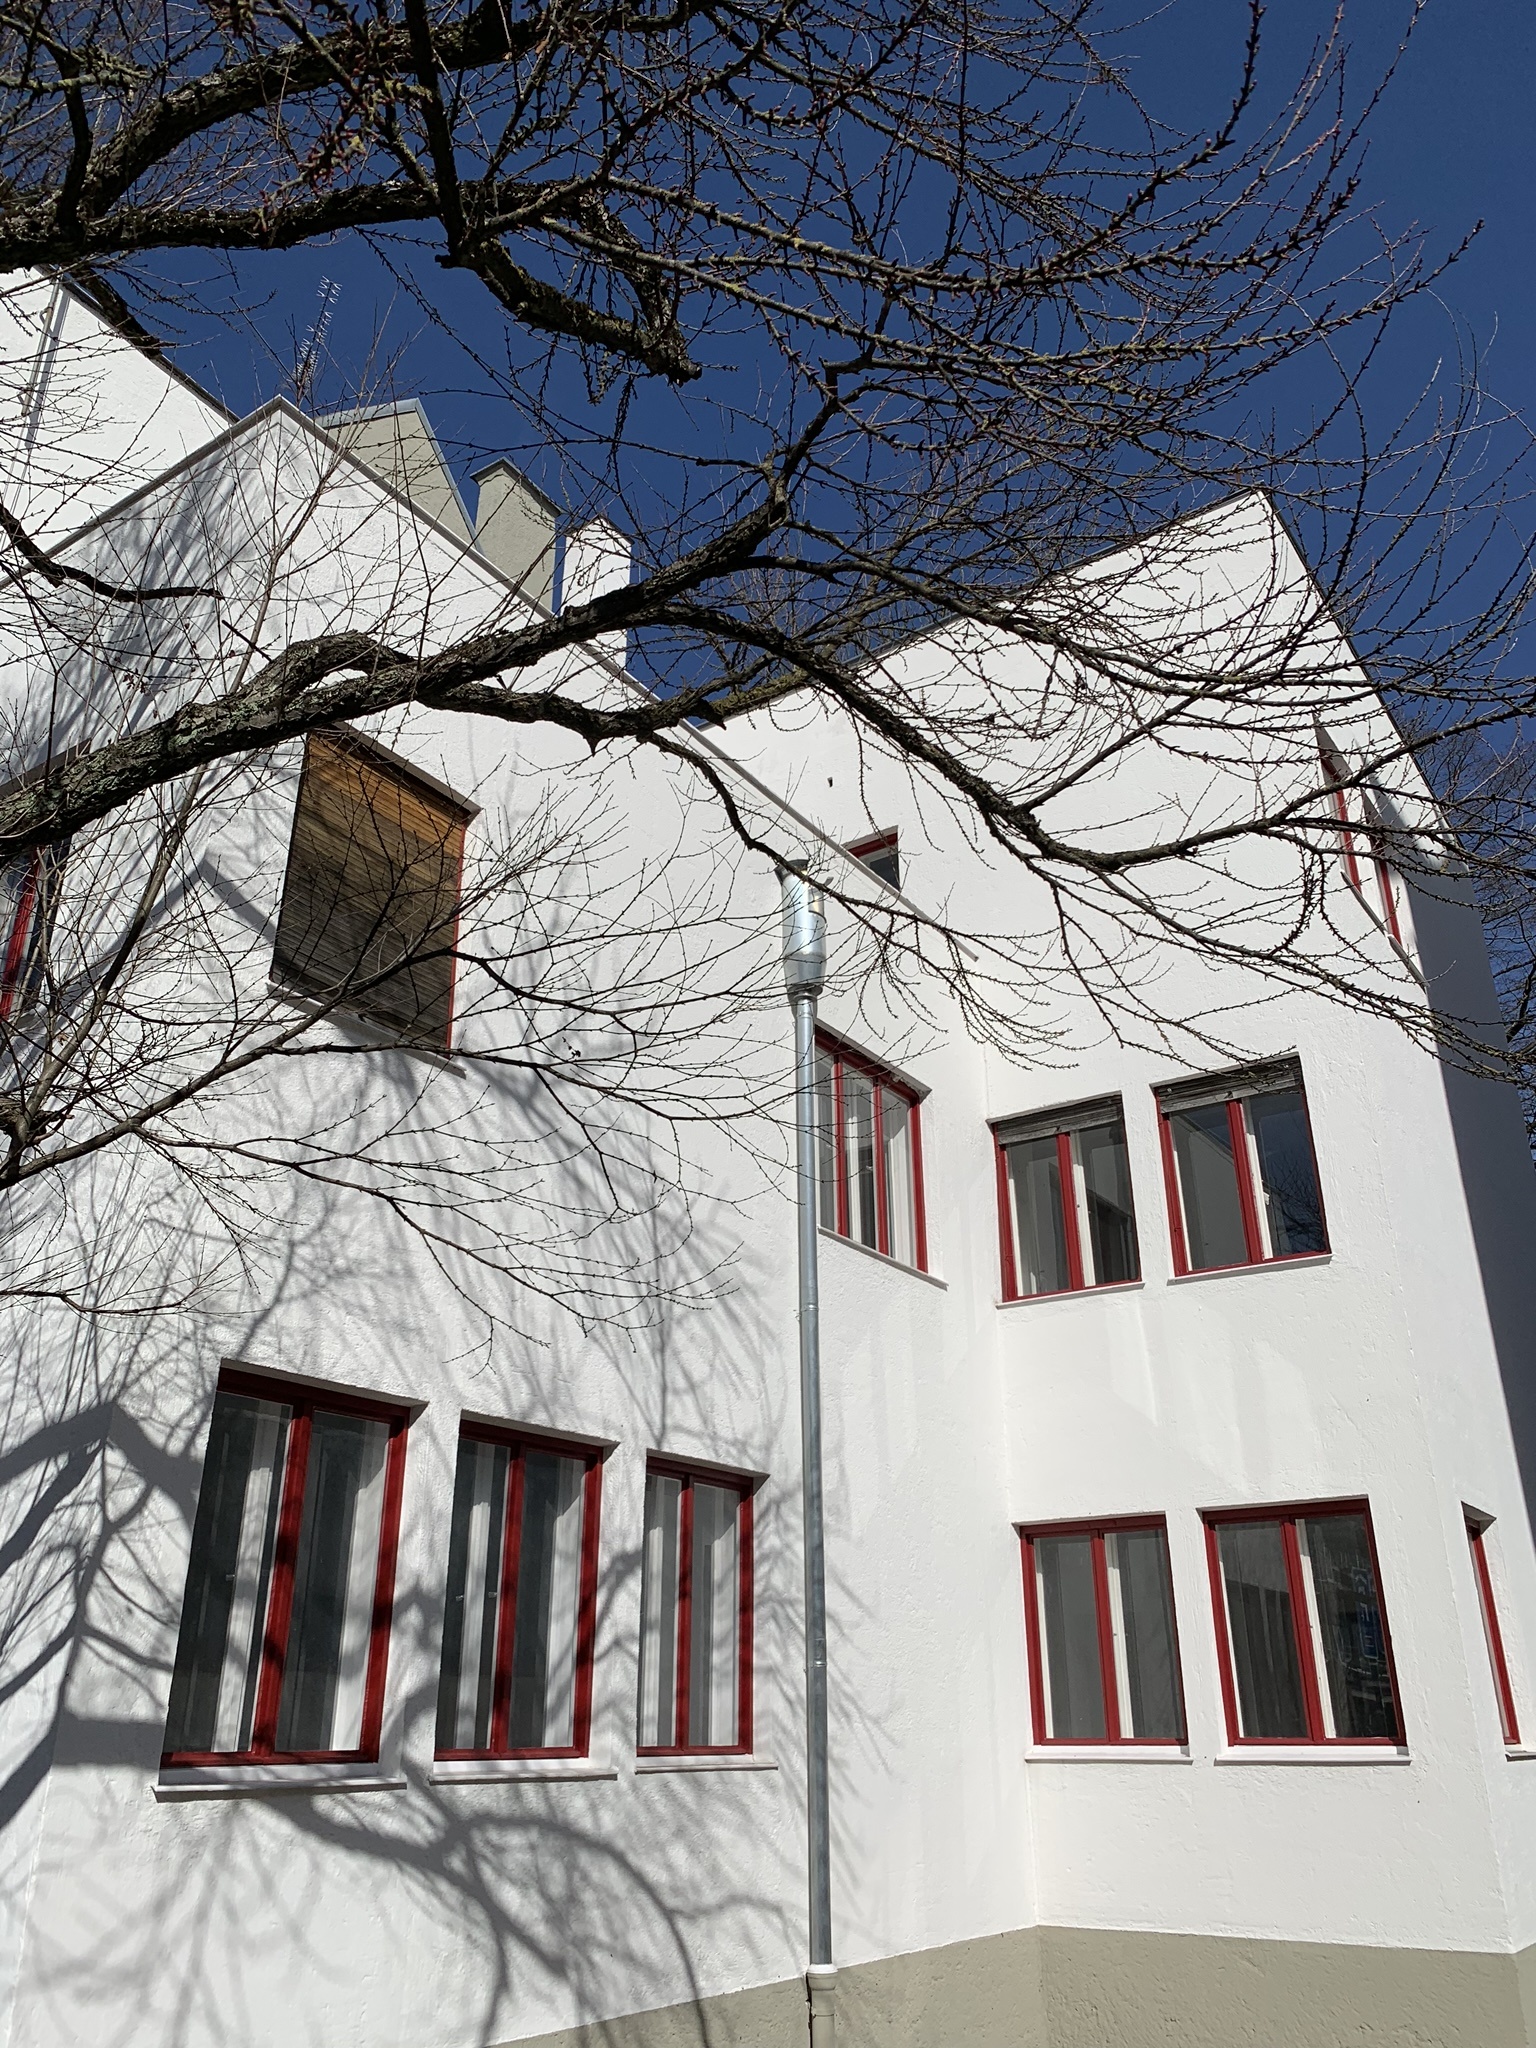 Wechs House, 1929-1931. Architect: Thomas Wechs